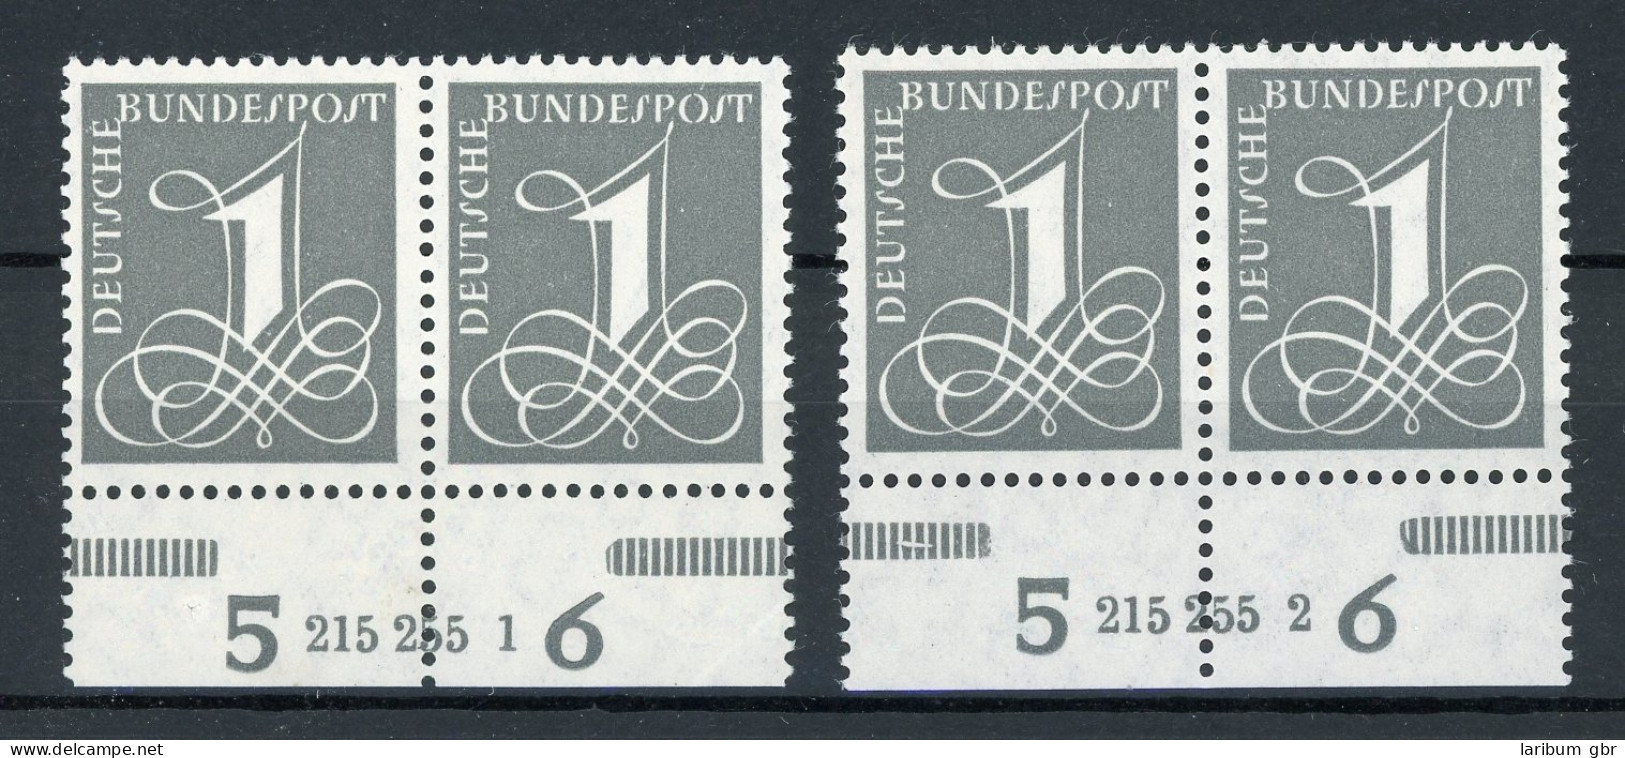 Bund 2 X 226 Yw HAN Postfrisch 215255.1 + 2 #IX737 - Used Stamps